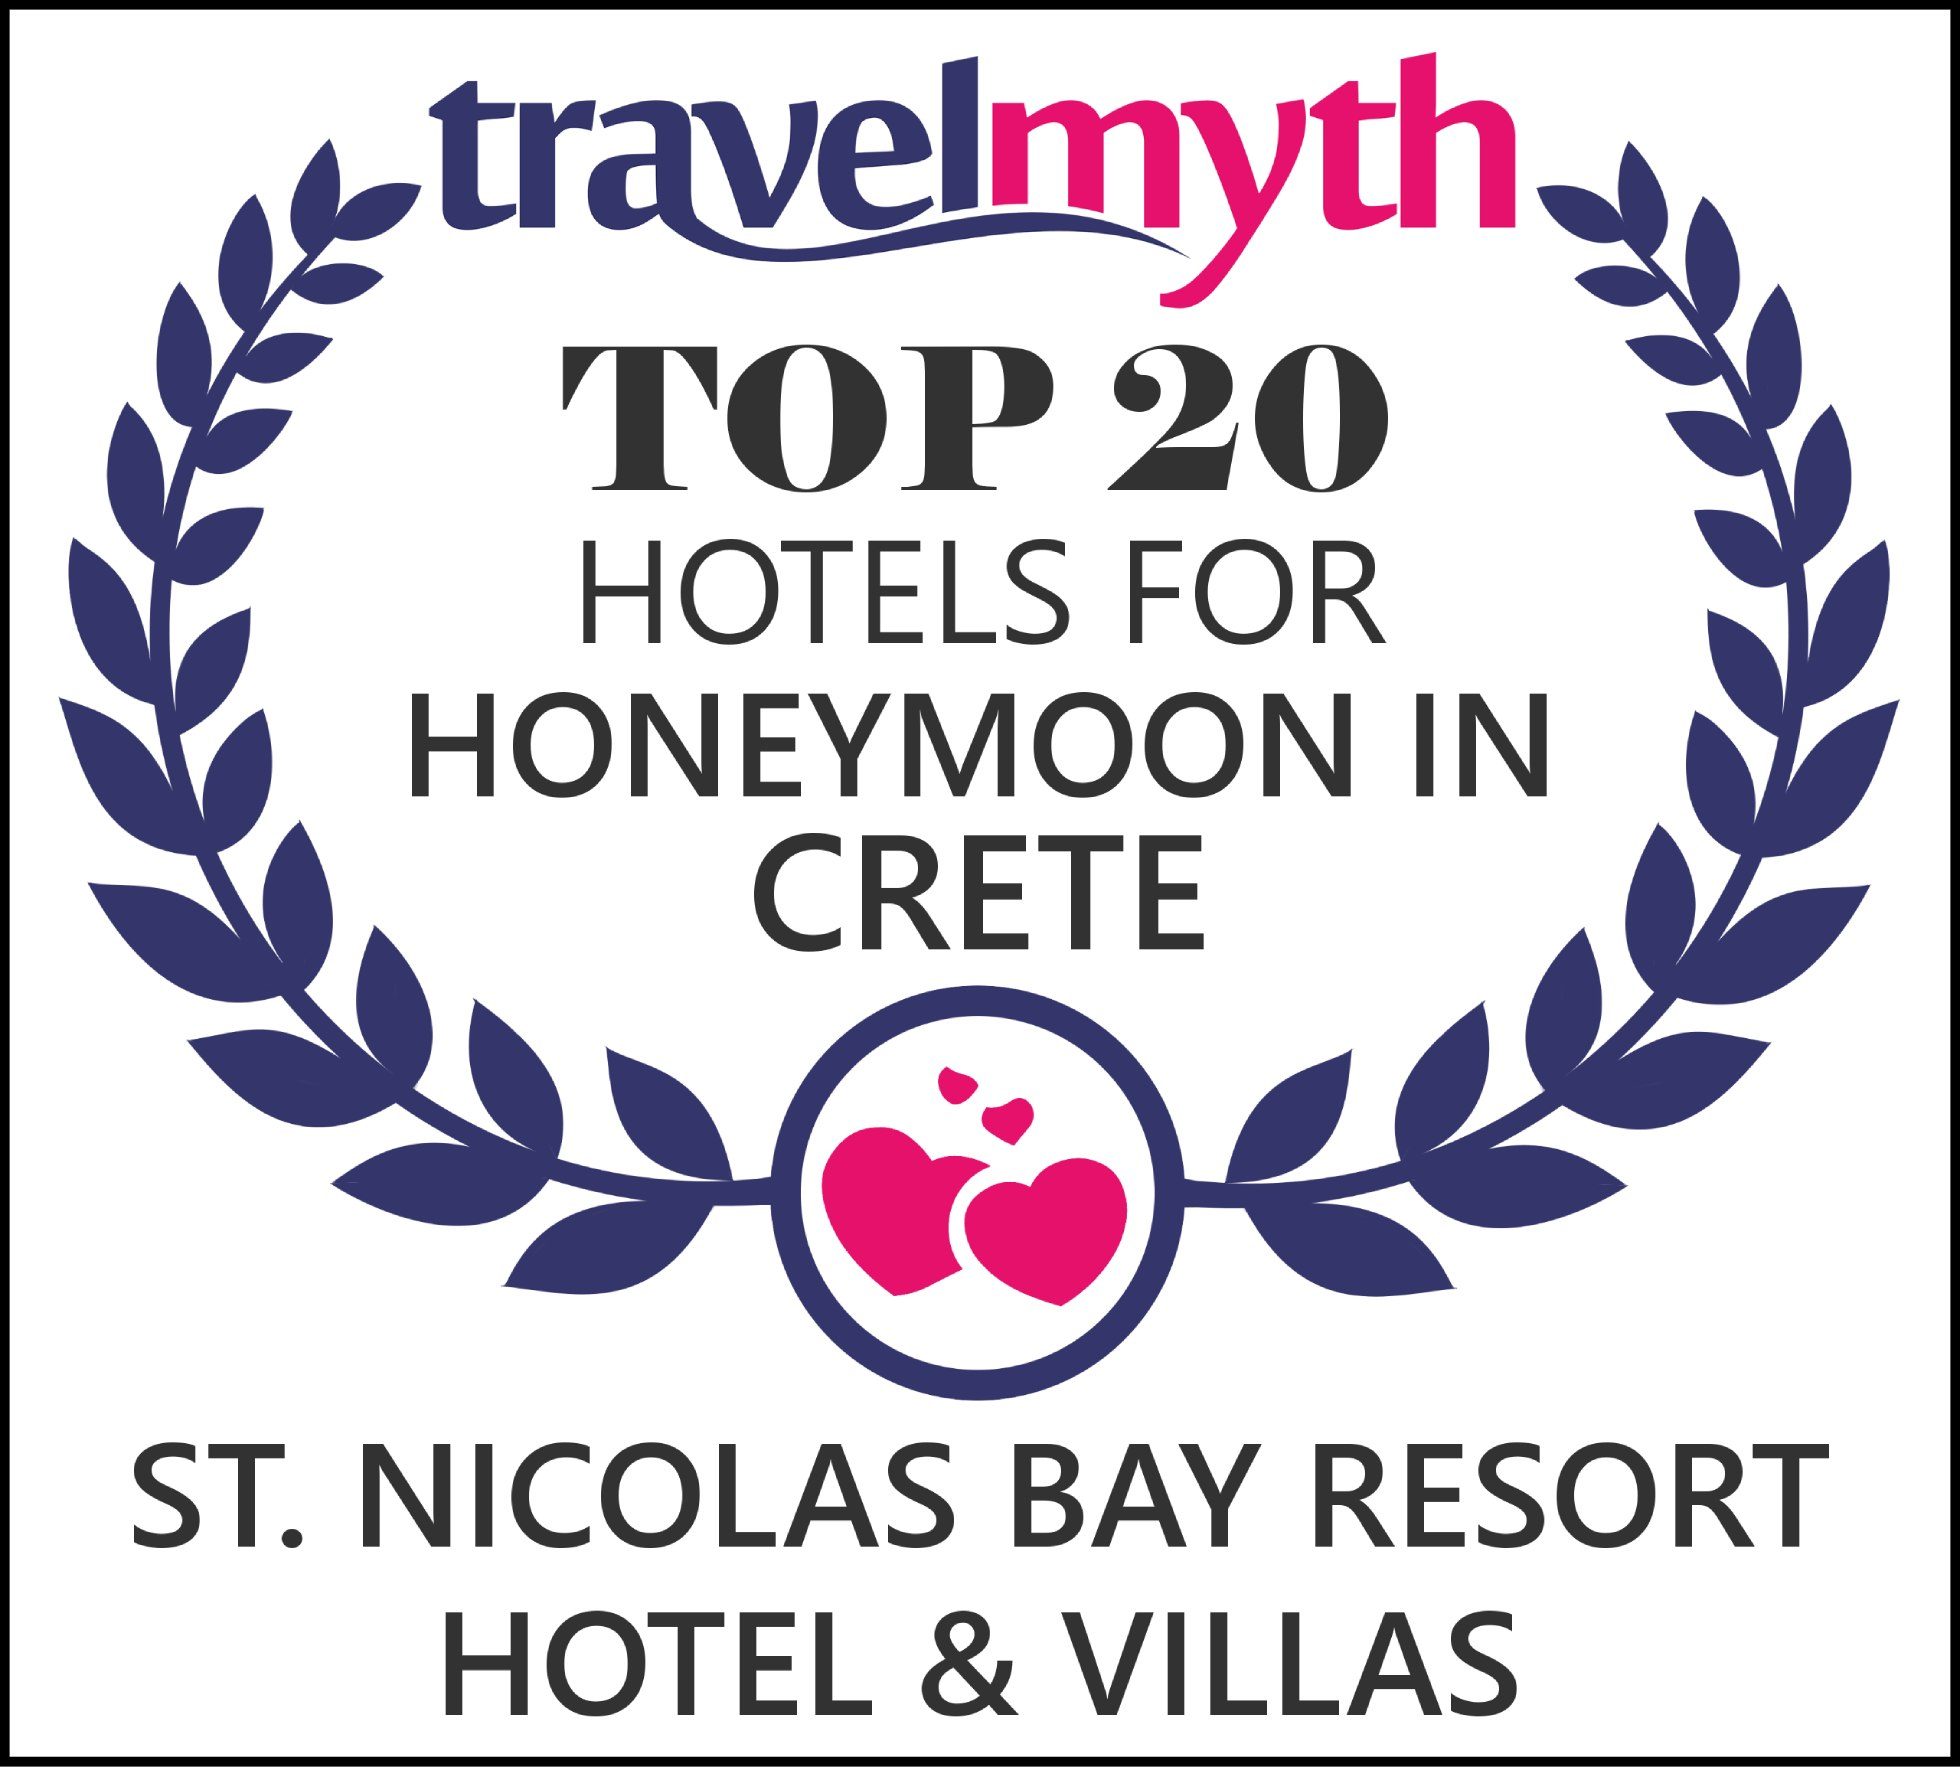 TOP 20 Hotels for Honeymoon in Crete